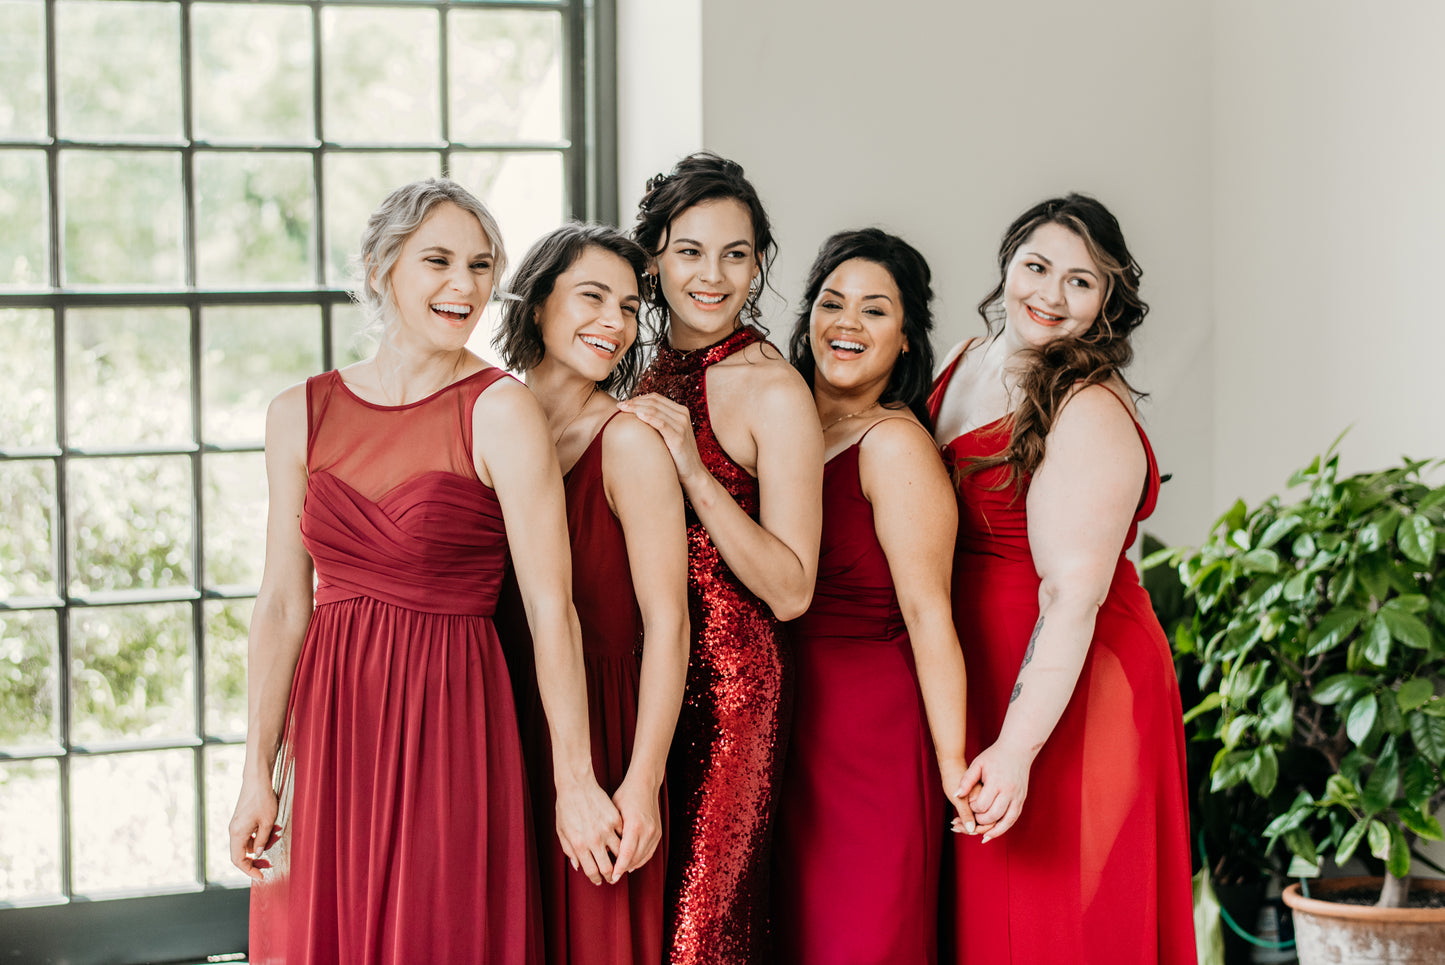 Katie (far right) wears the Ann Dress